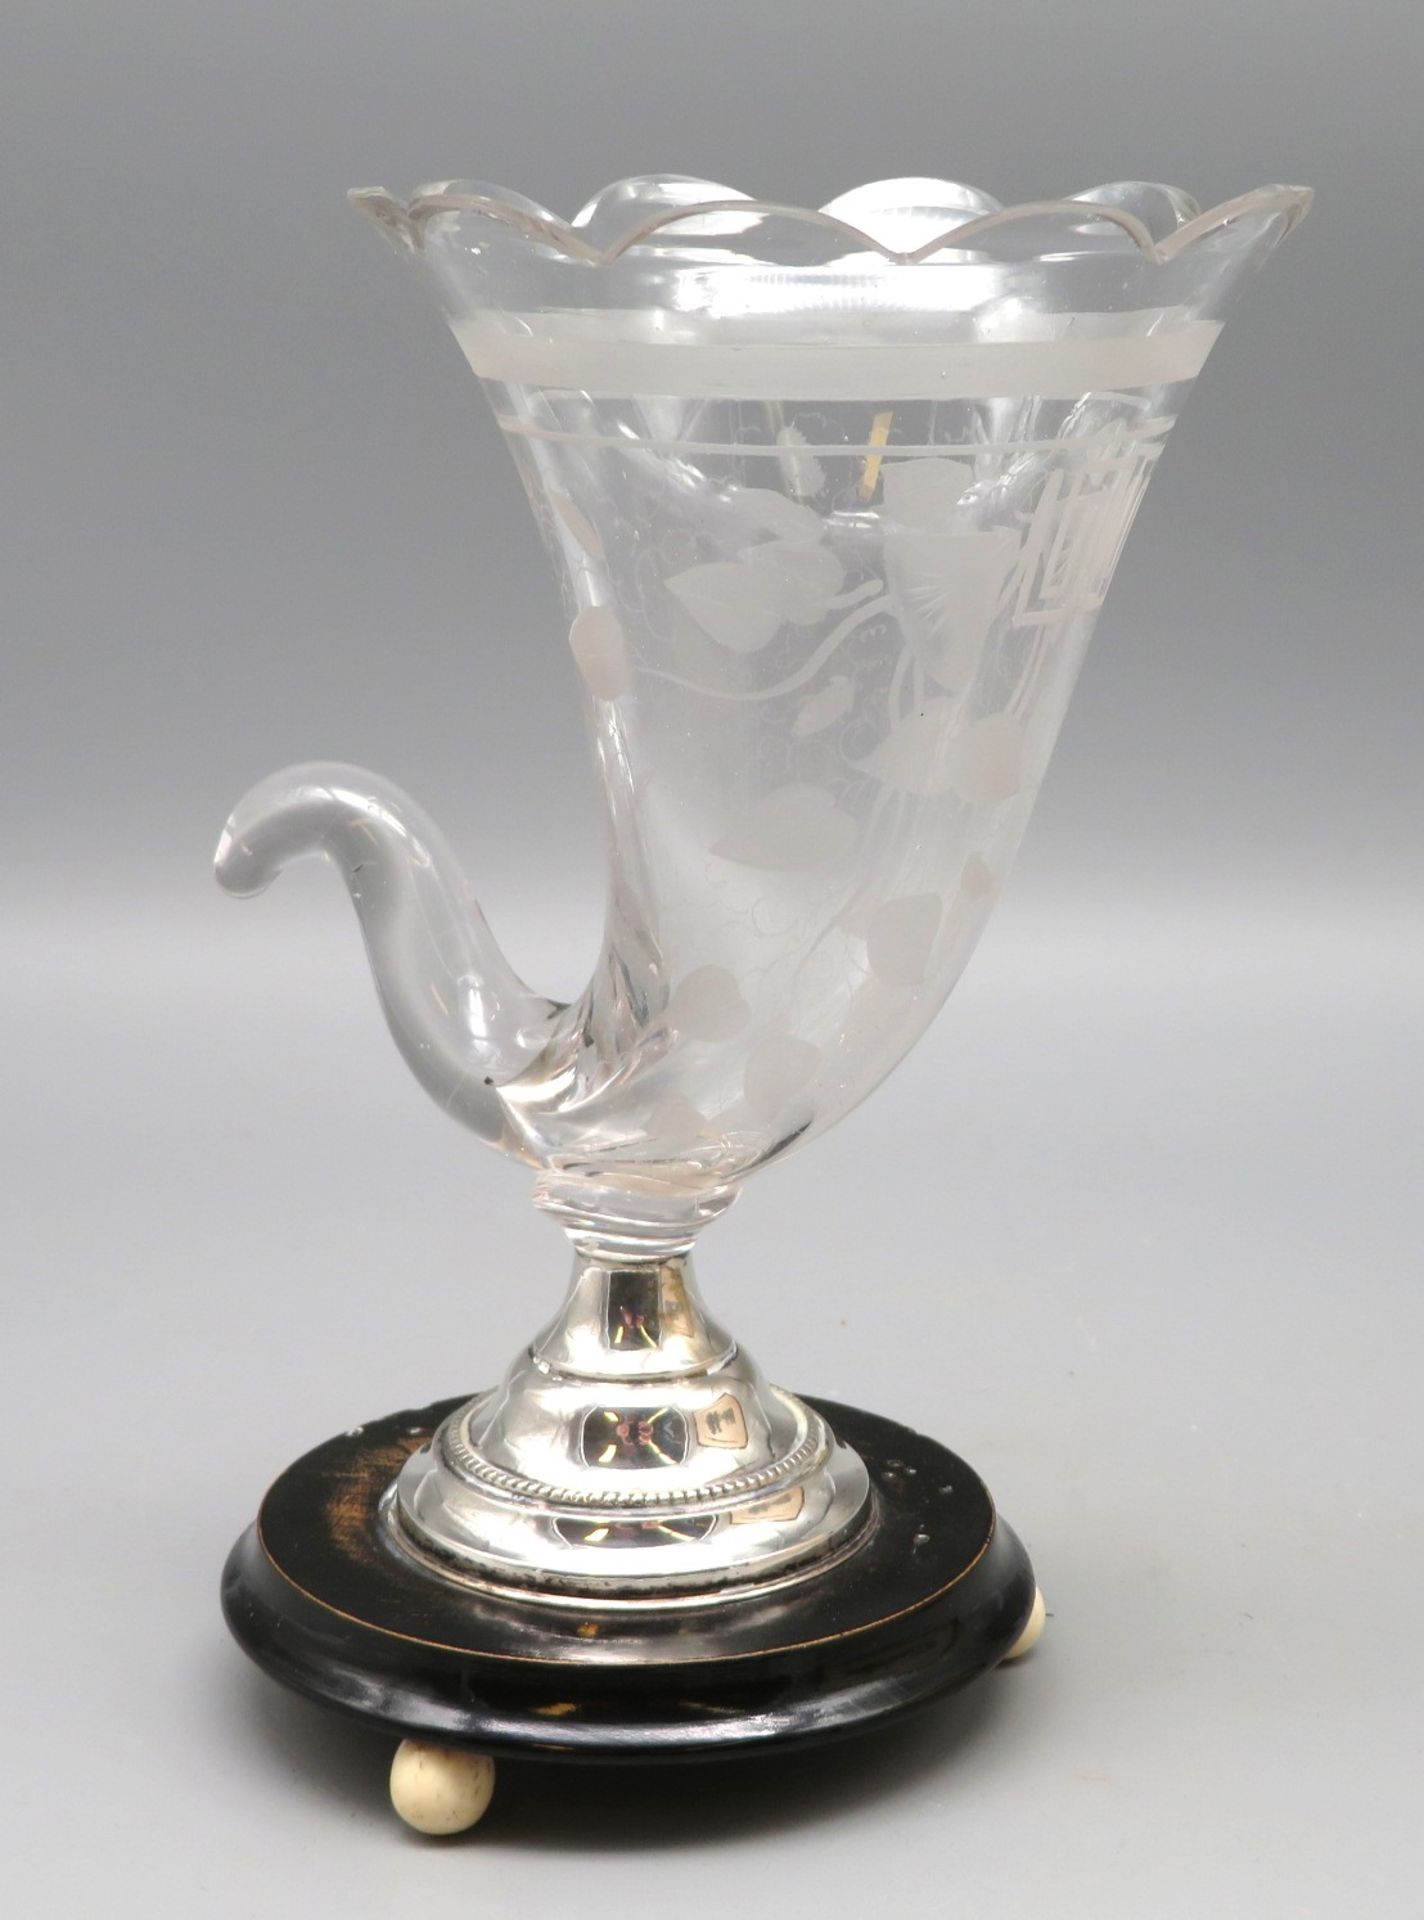 Seltene Zigarren-Vase, Biedermeier, 19. Jahrhundert, farbloses Glas geschliffen, Silbermontur, rund - Bild 2 aus 2